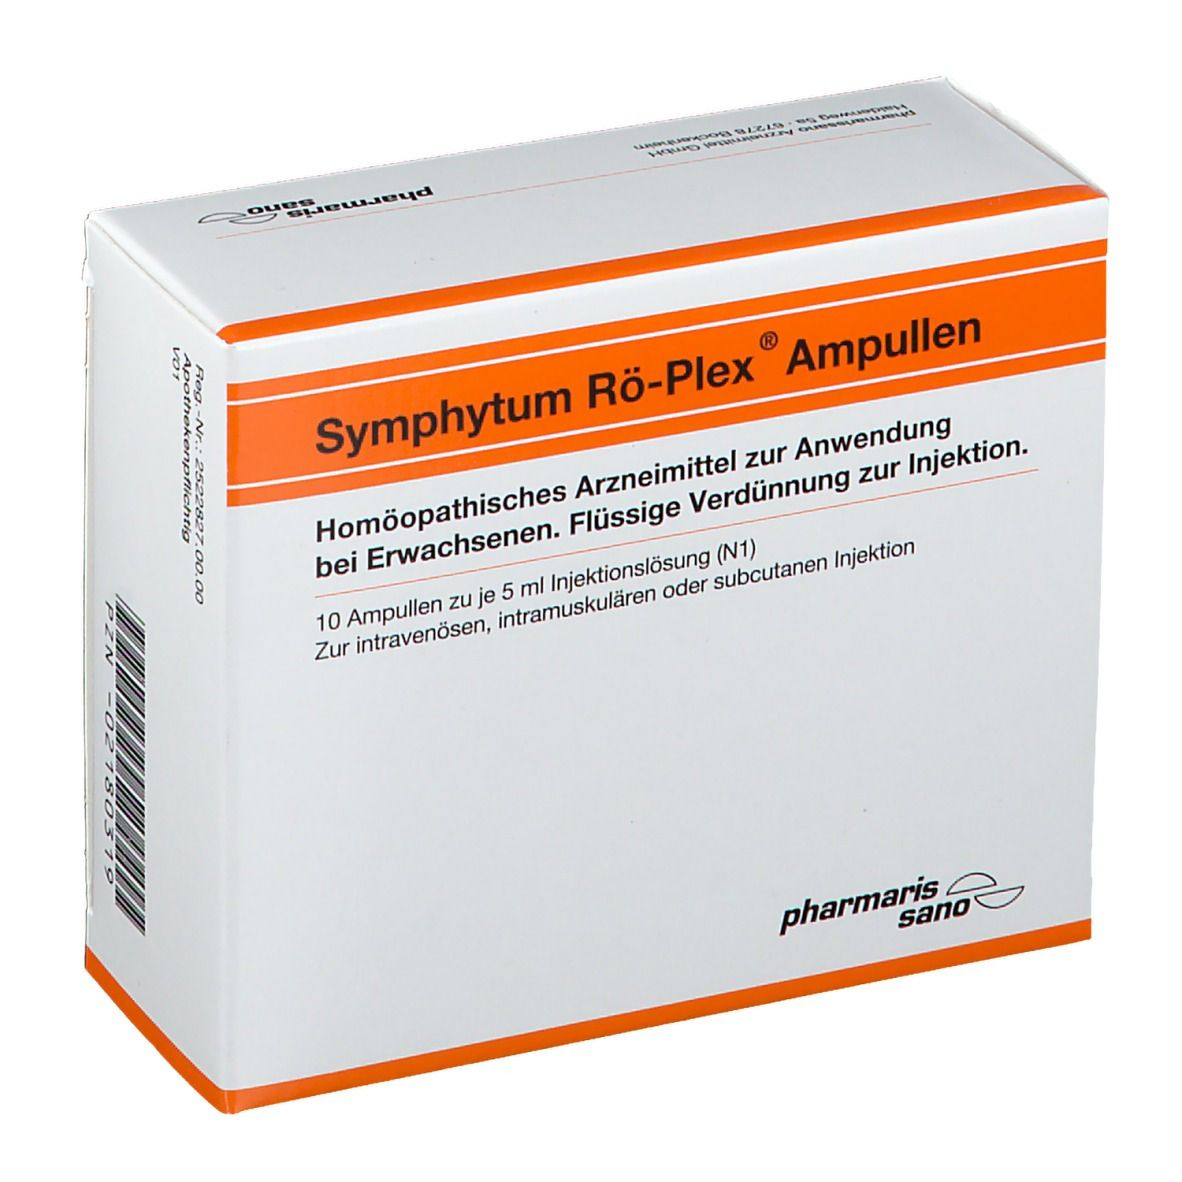 Symphytum Rö-Plex® Ampullen